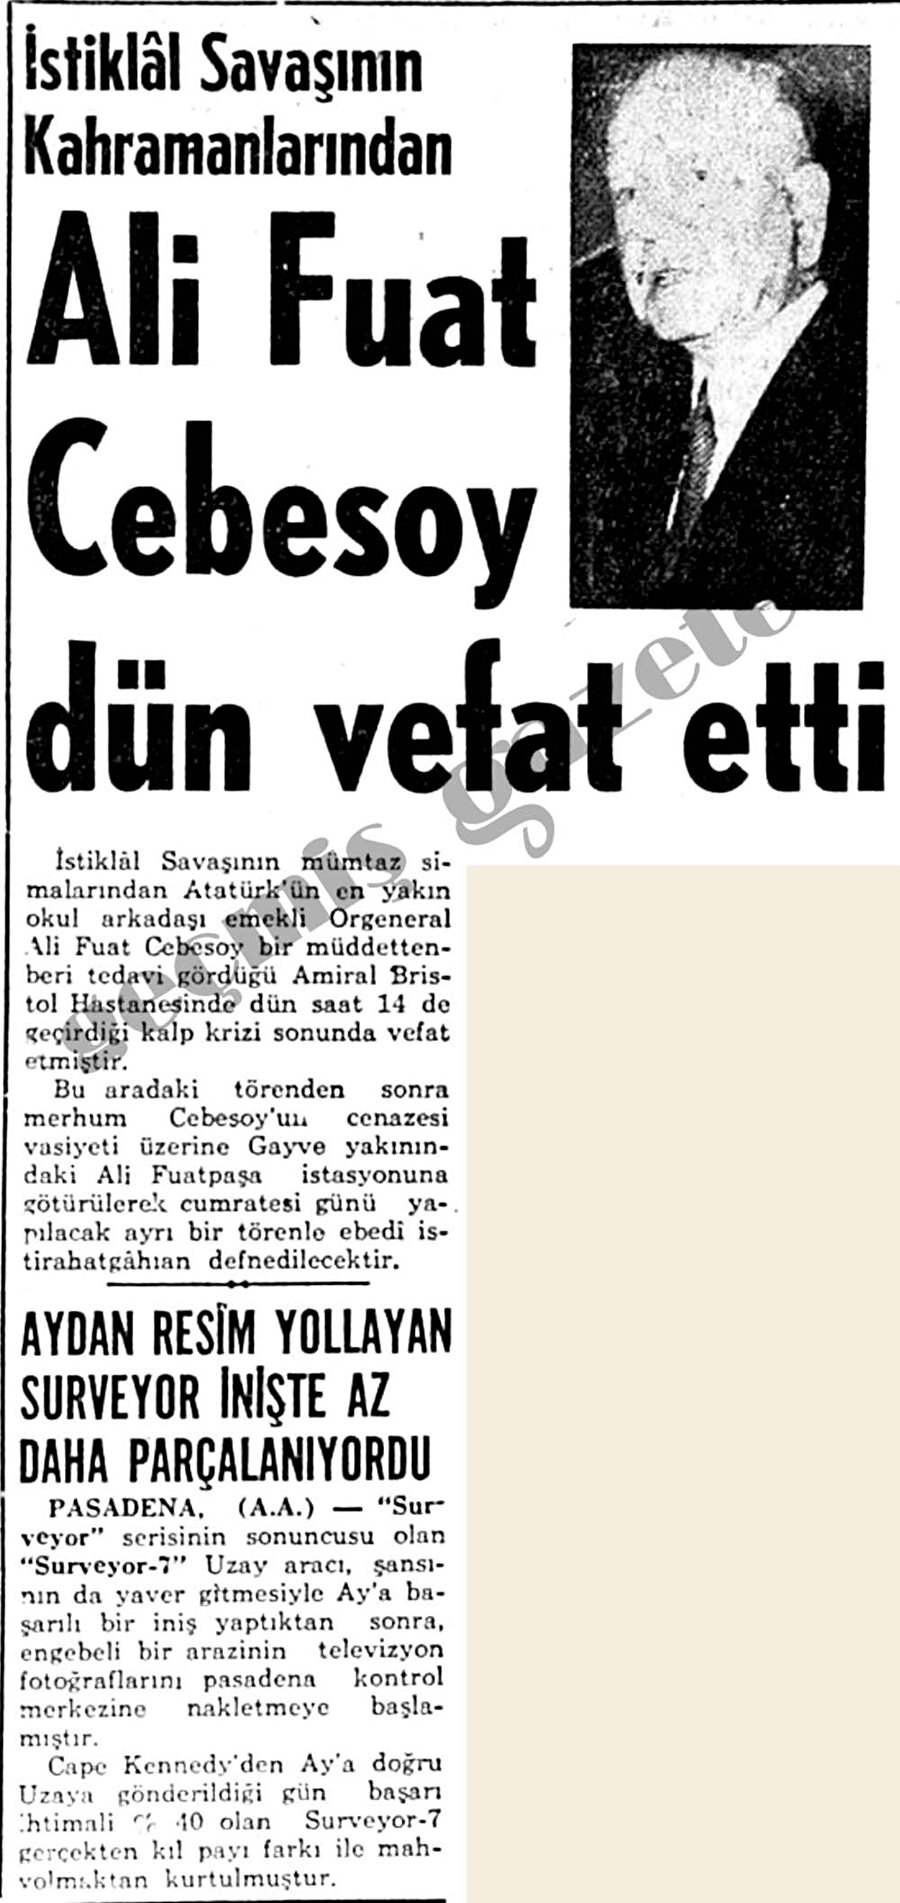 Ölümü
Ali Fuat Cebesoy 10 Ocak 1968 tarihinde İstanbul'da hayatını kaybetti. Cenazesi Geyve civarındaki Alifuatpaşa beldesinde bulunan Merkez Camii'nin avlusunda toprağa verildi. 